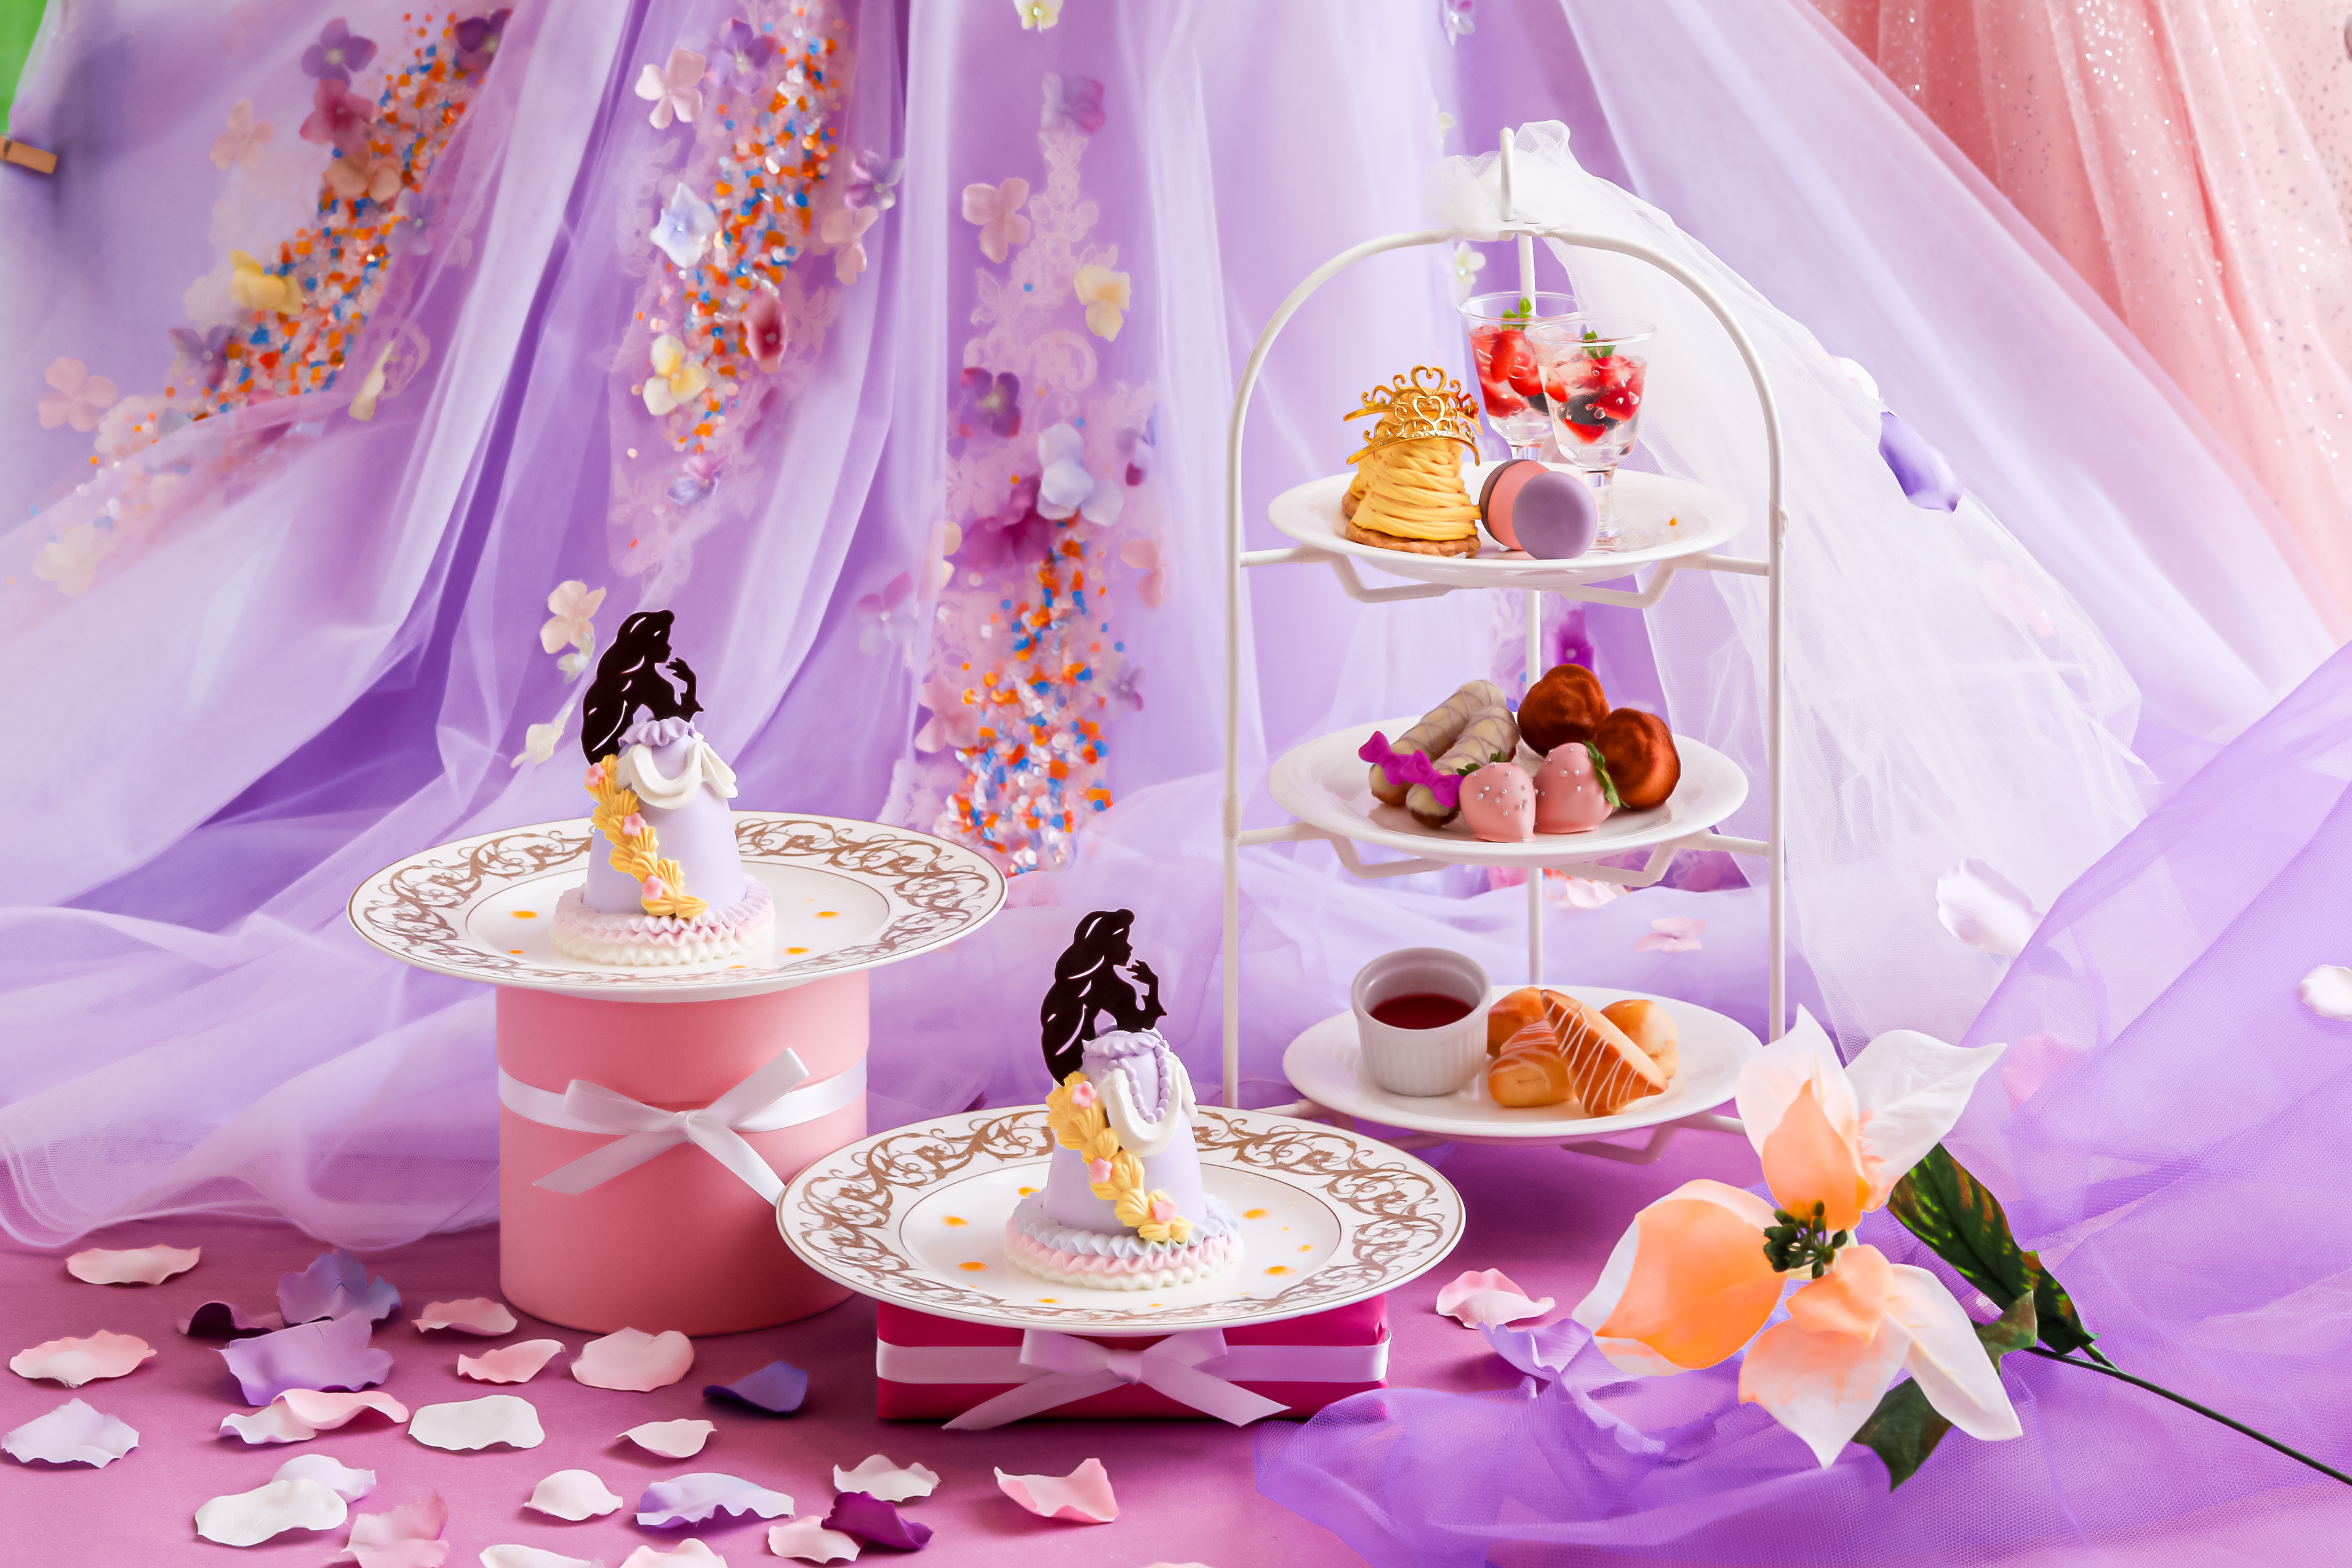 プリンセスのドールケーキ付 フラワープリンセス アフタヌーンティー 販売 花々に囲まれたプリンセスをイメージした優雅なアフタヌーンティー Newscast